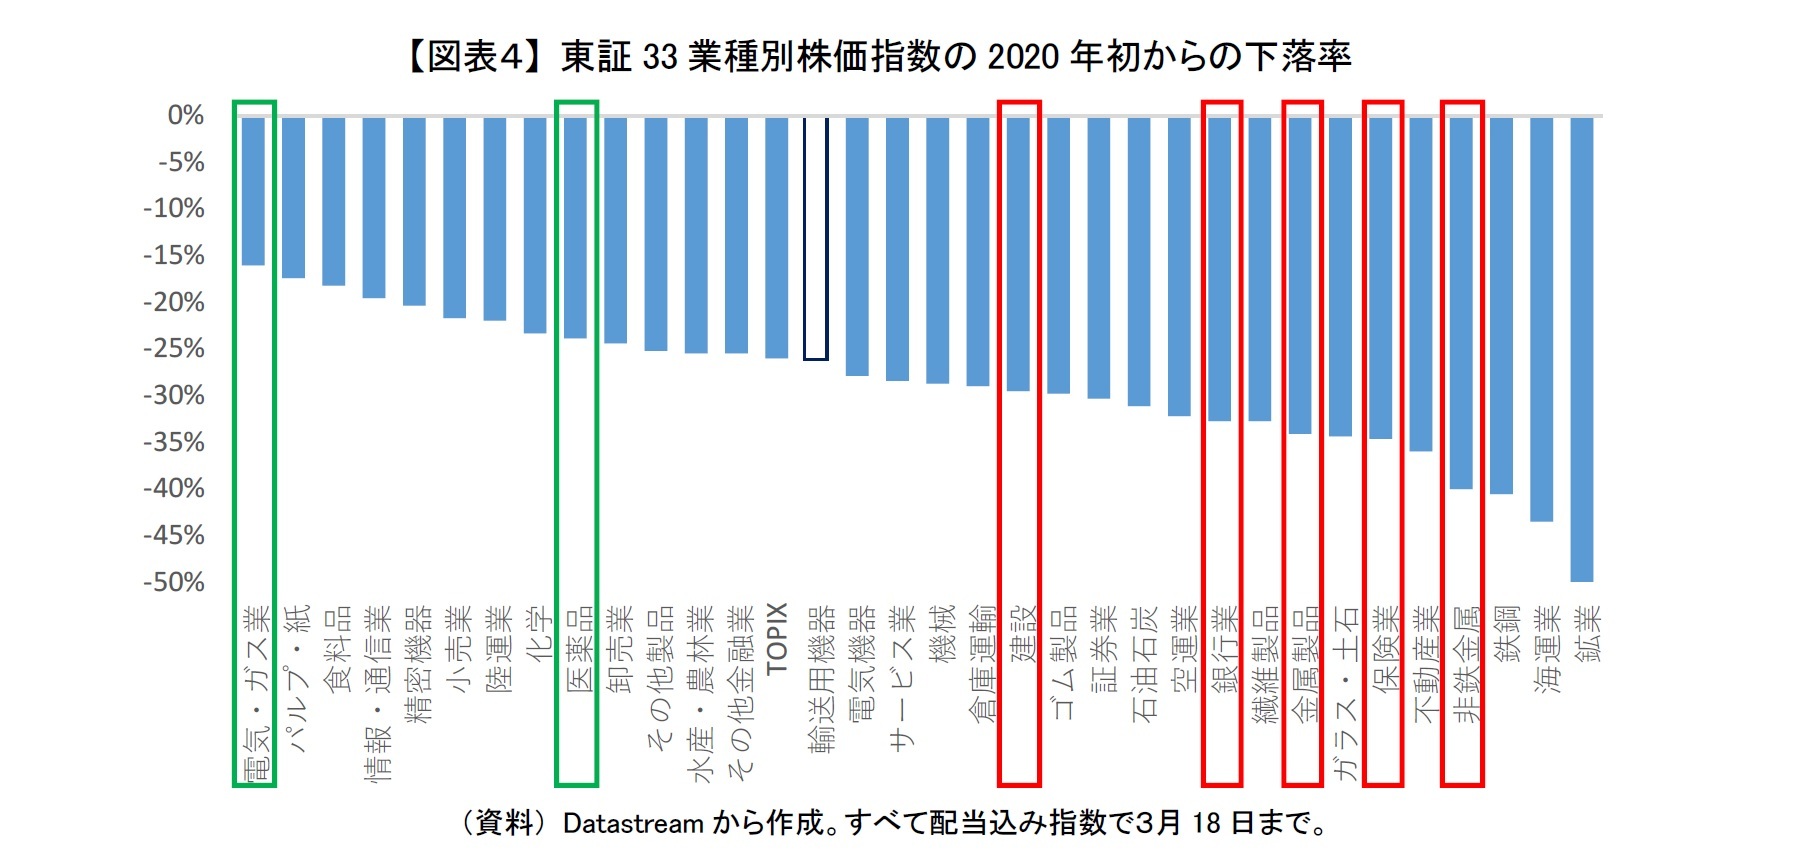 【図表４】 東証33業種別株価指数の2020年初からの下落率